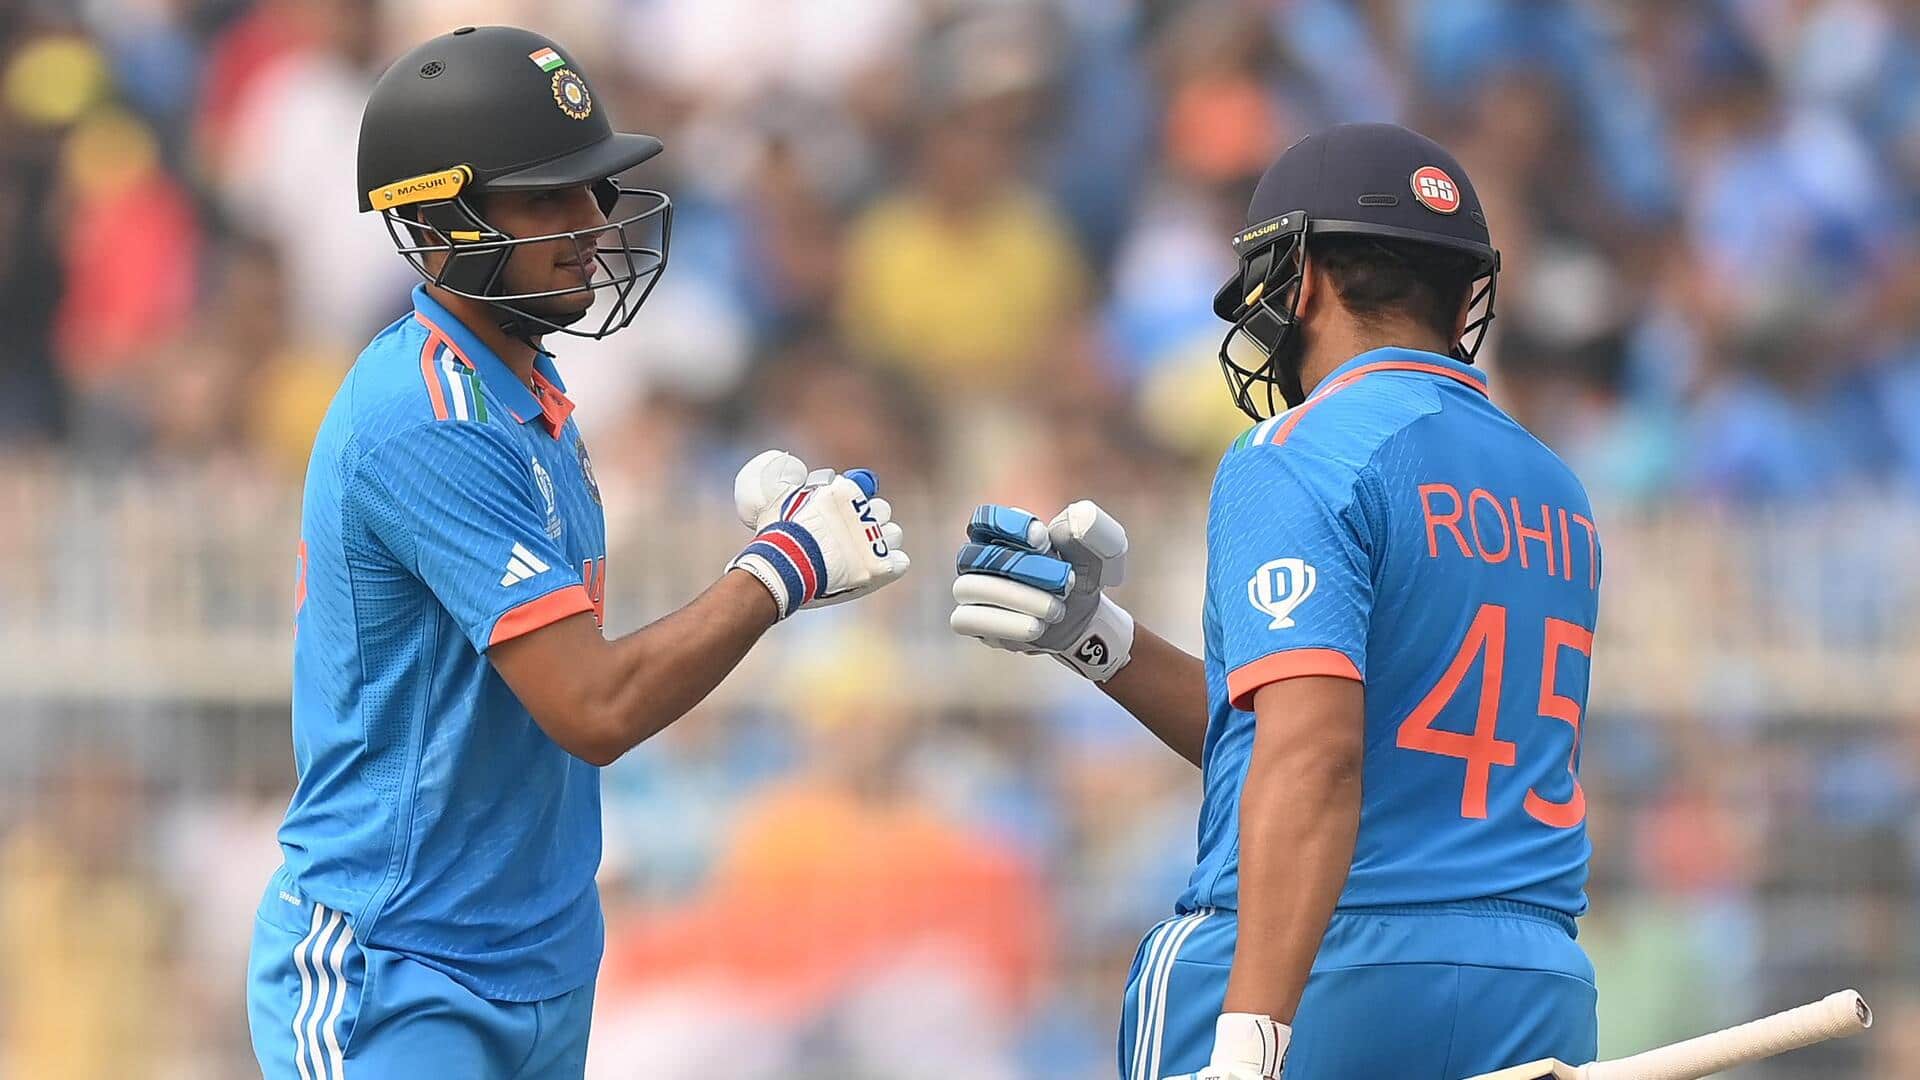 3 भारतीय खिलाड़ियों ने इस साल वनडे जीत में बनाए 1000+ रन, पहली बार हुआ ऐसा